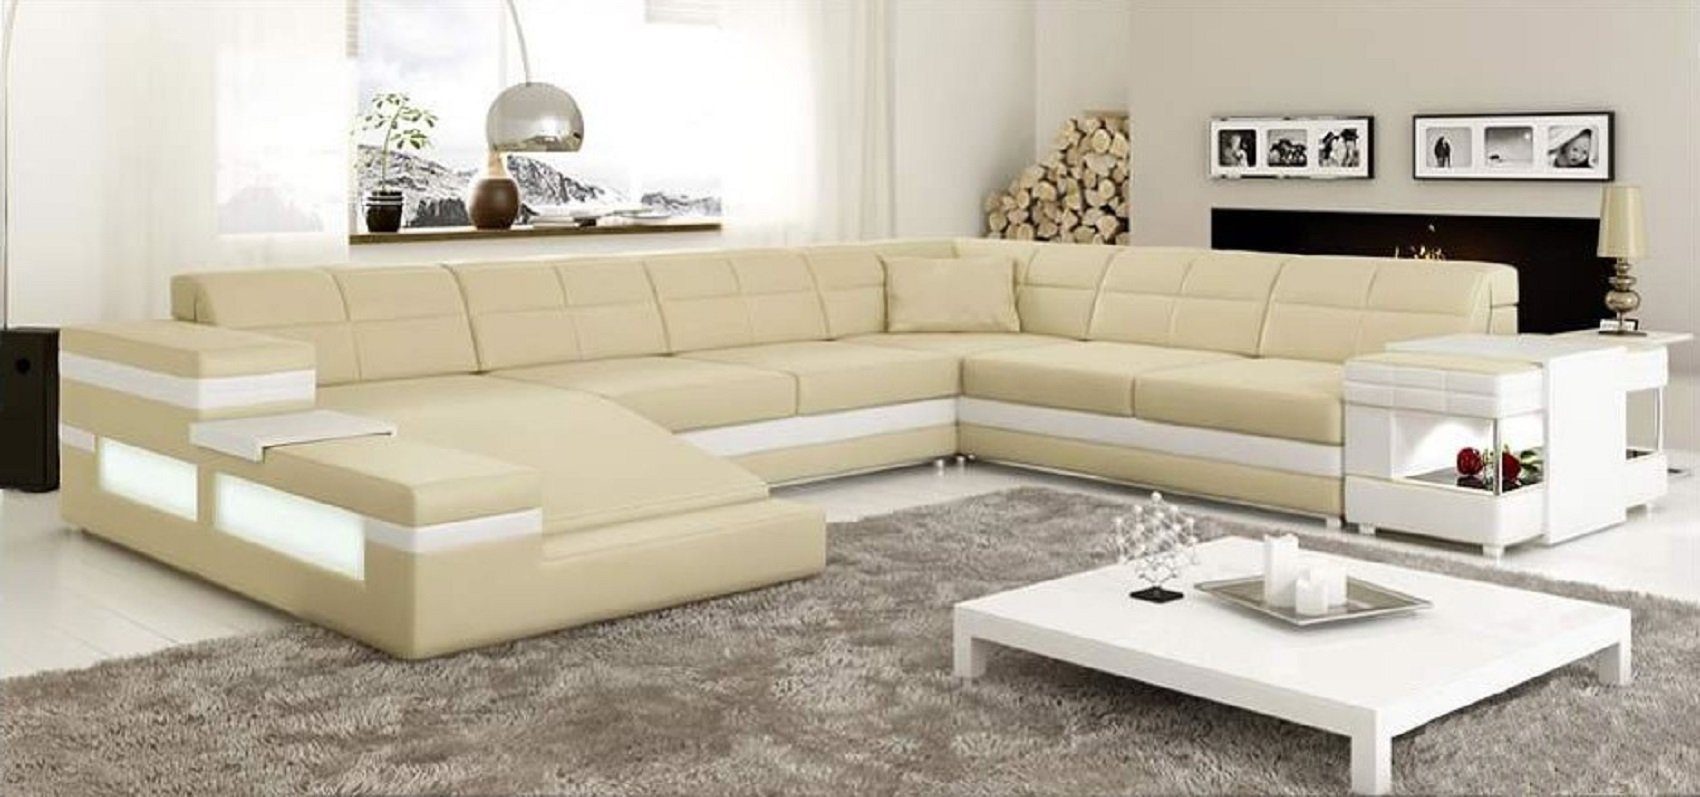 JVmoebel Ecksofa Made Beige/Weiß Ecksofa Eckgarnitur Sofa, Sofa Couch Design Polster Ledersofa Europe in